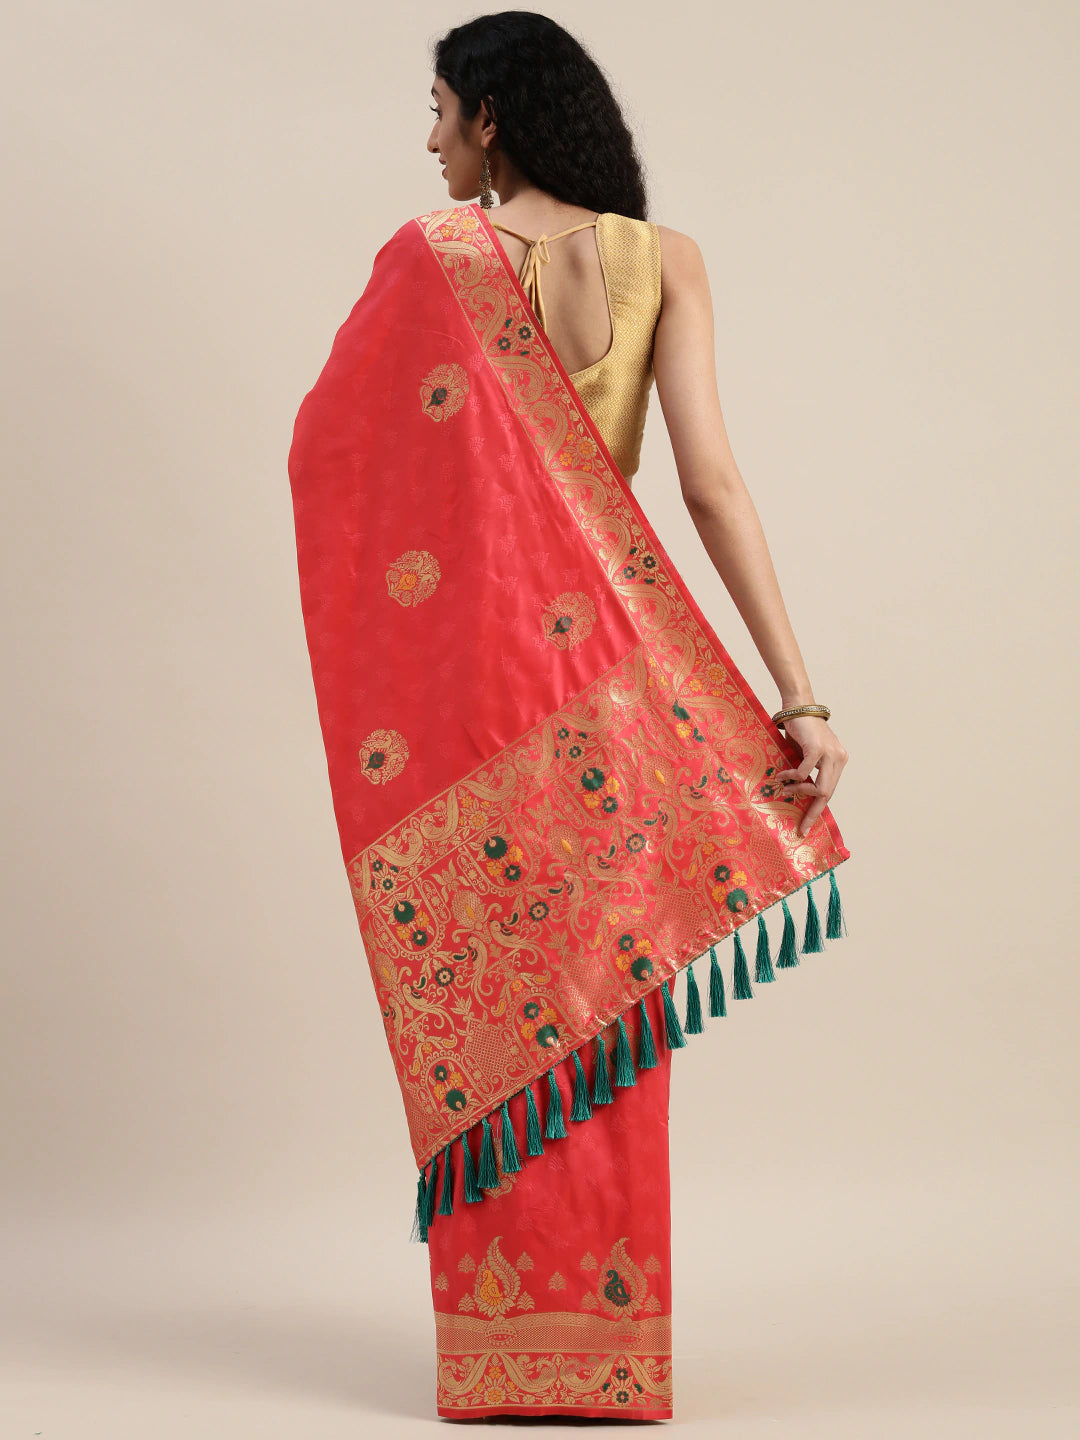 Stylish Kanjivaram Gajari Colour Ethnic Motifs Silk Saree